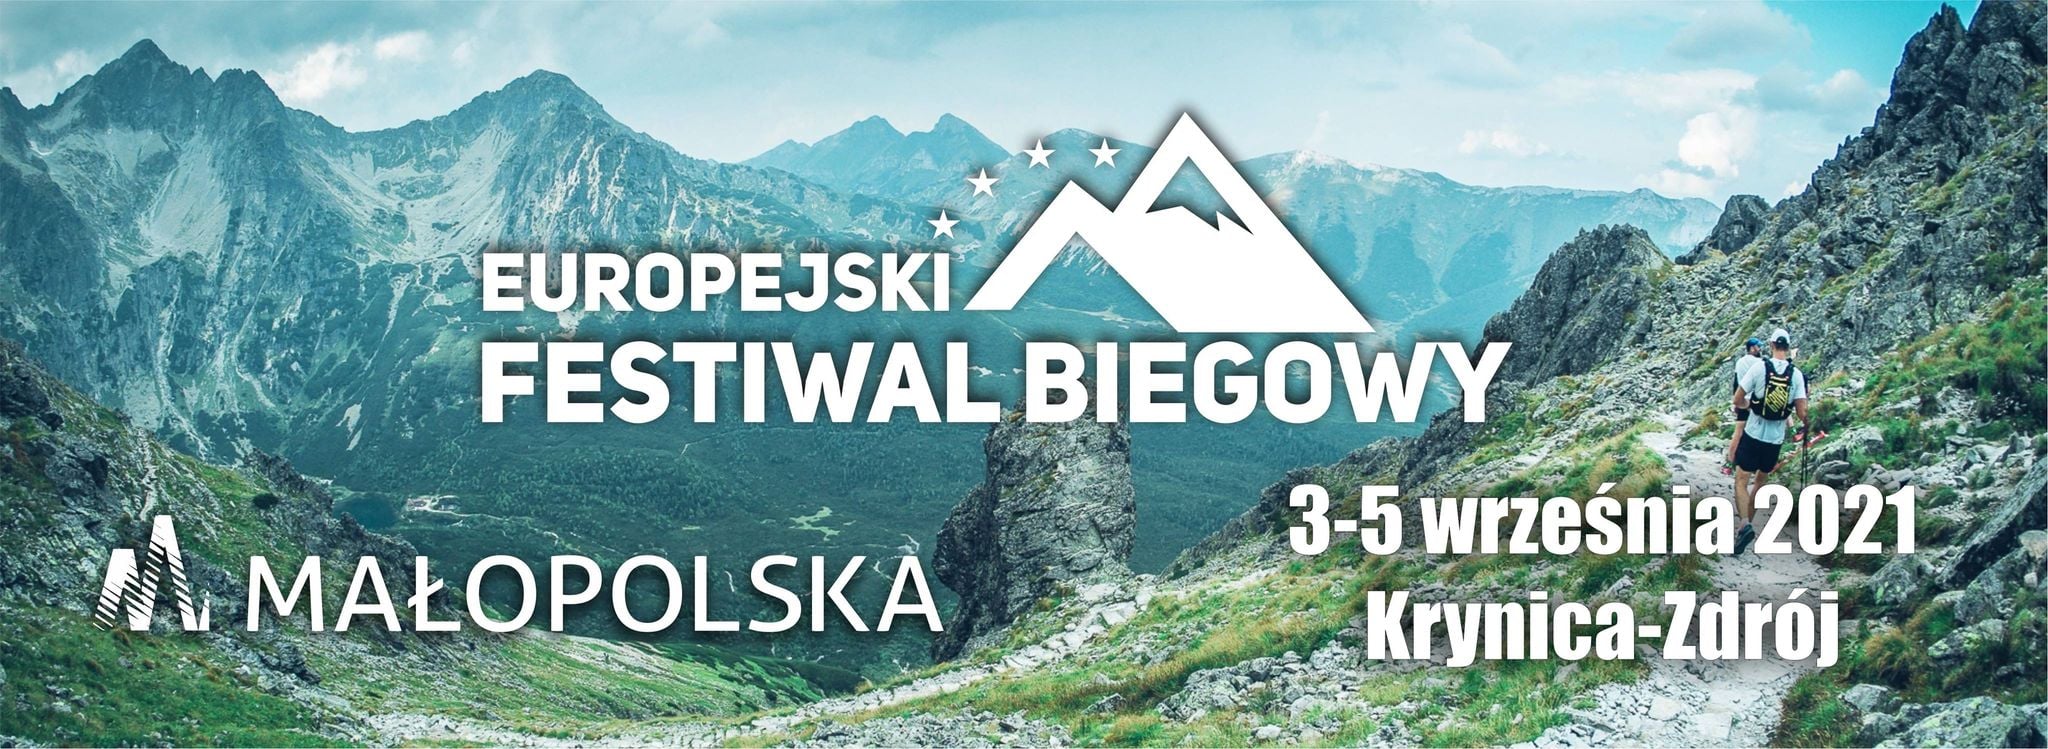 Europejski Festiwal Biegowy – wyjątkowa impreza sportowa